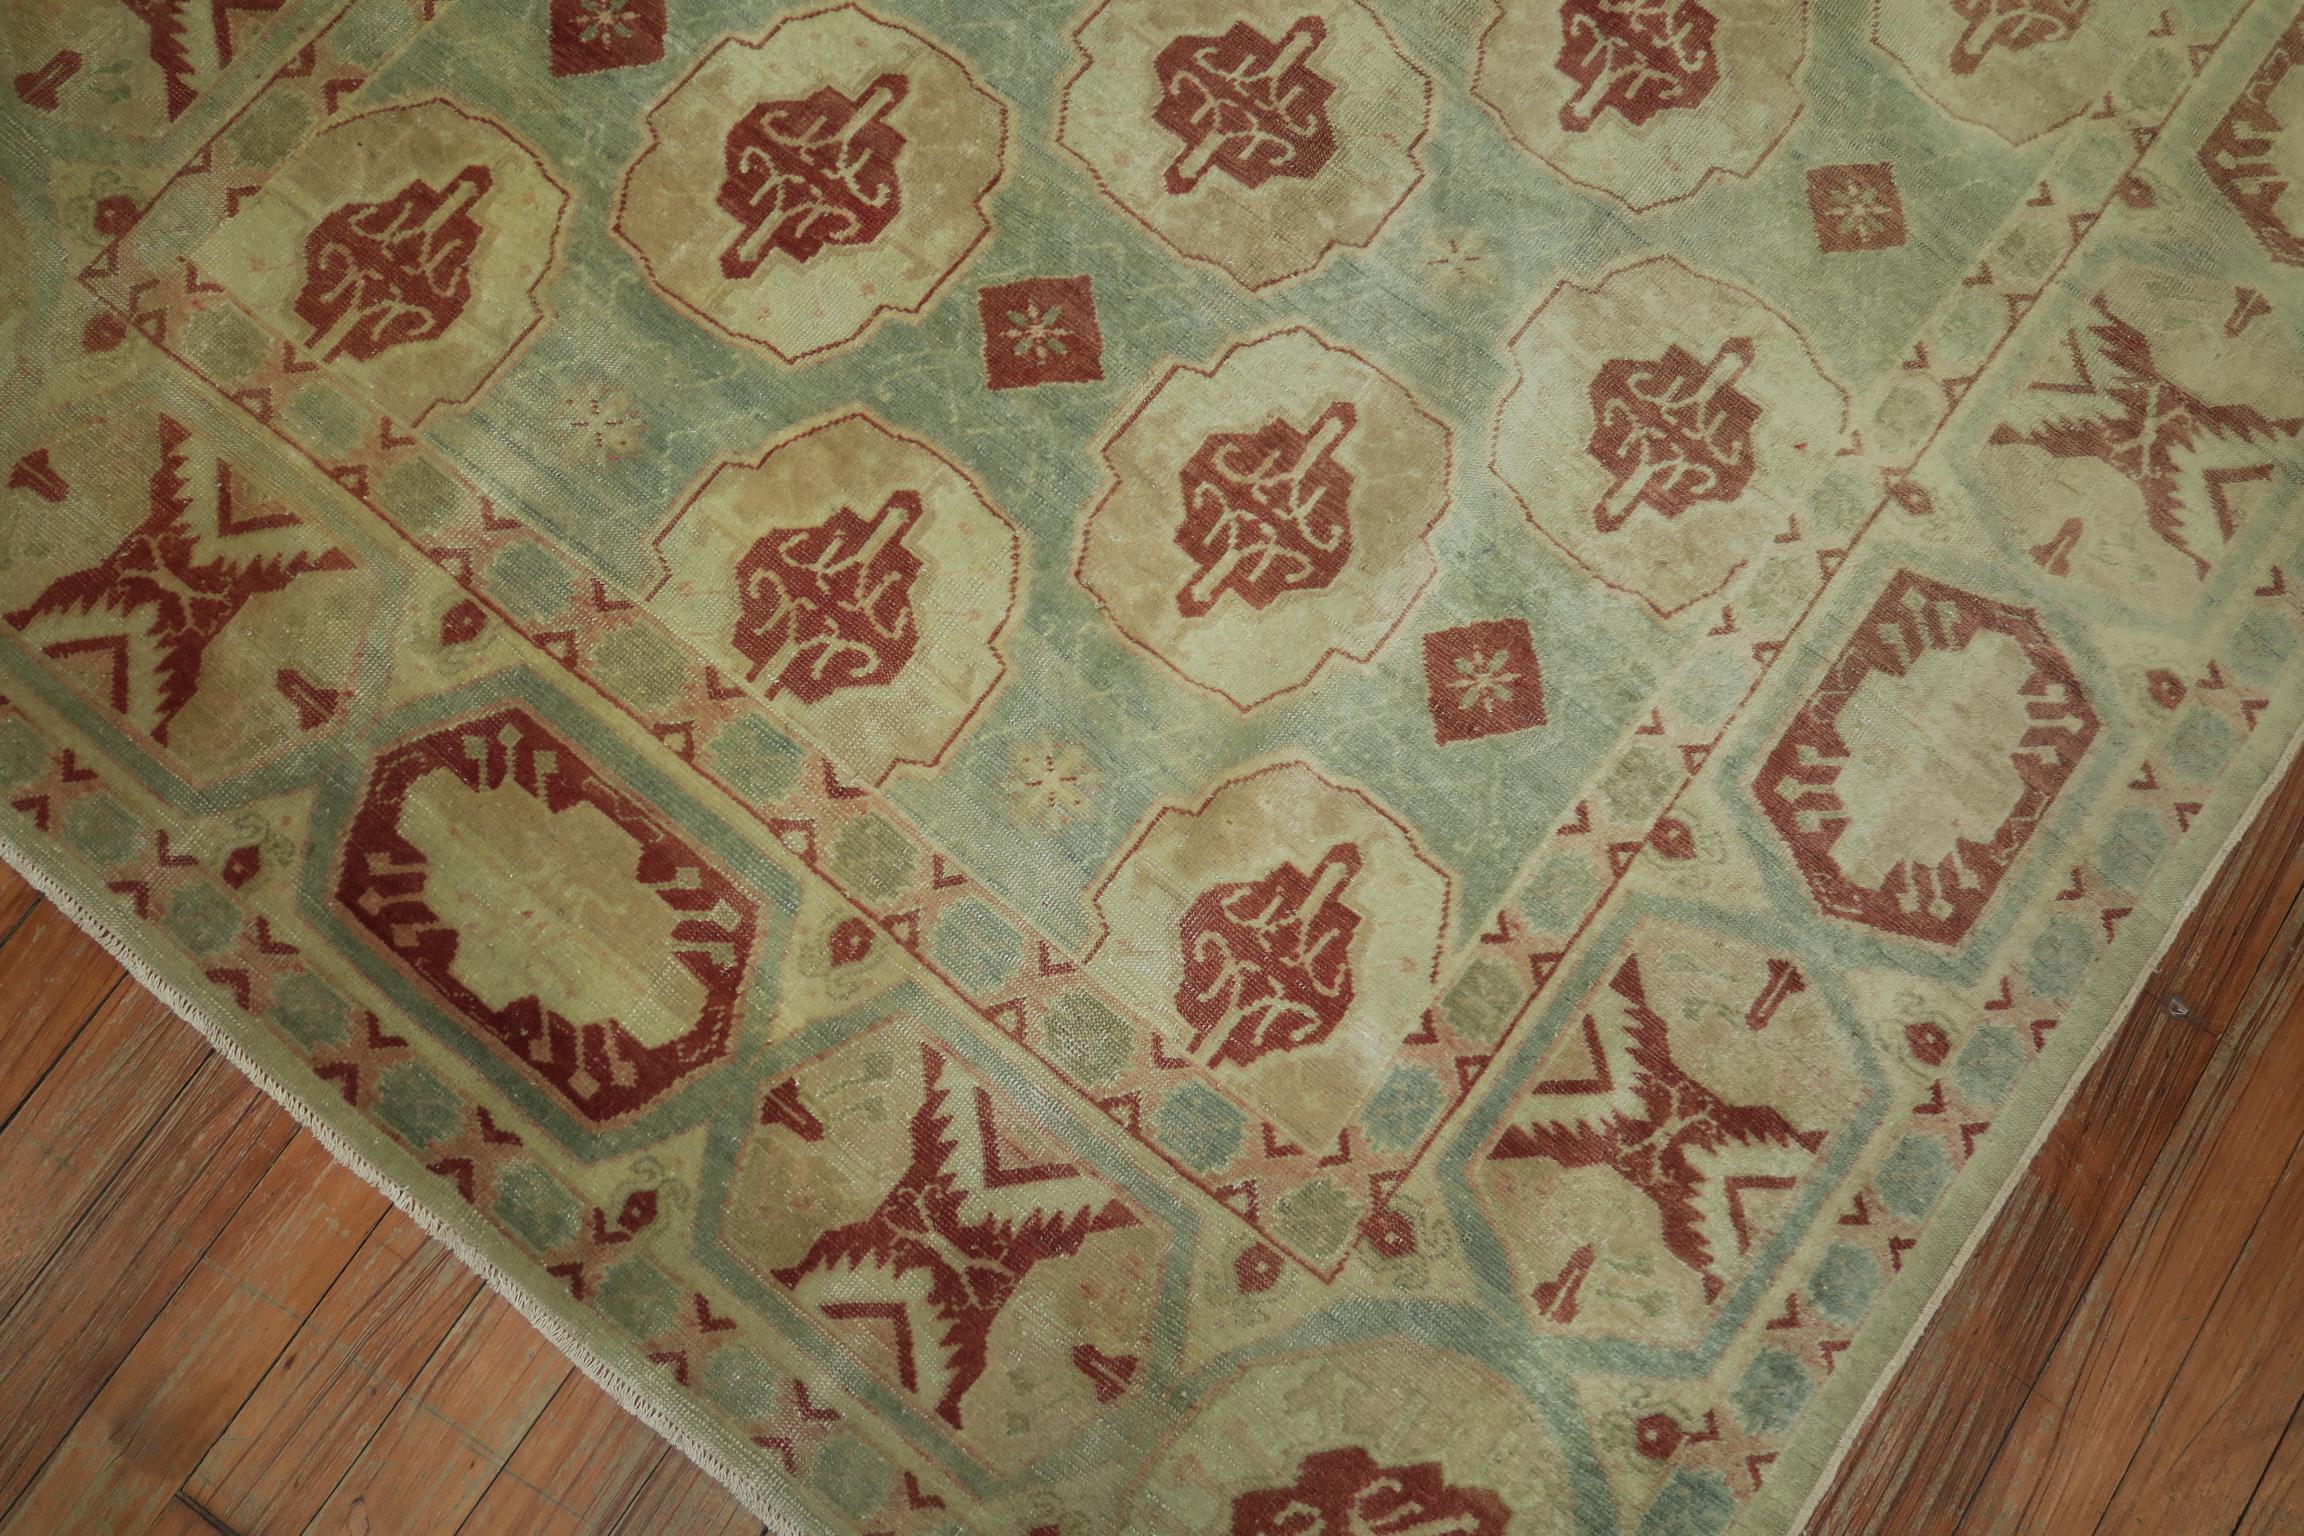 Ein hervorragender kleiner antiker türkischer Teppich. Vorwiegend Meerschaumgrün und gebranntes Gold verleihen ihm ein verblasstes, sublimiertes Aussehen,

um 1880, Maße: 4'4